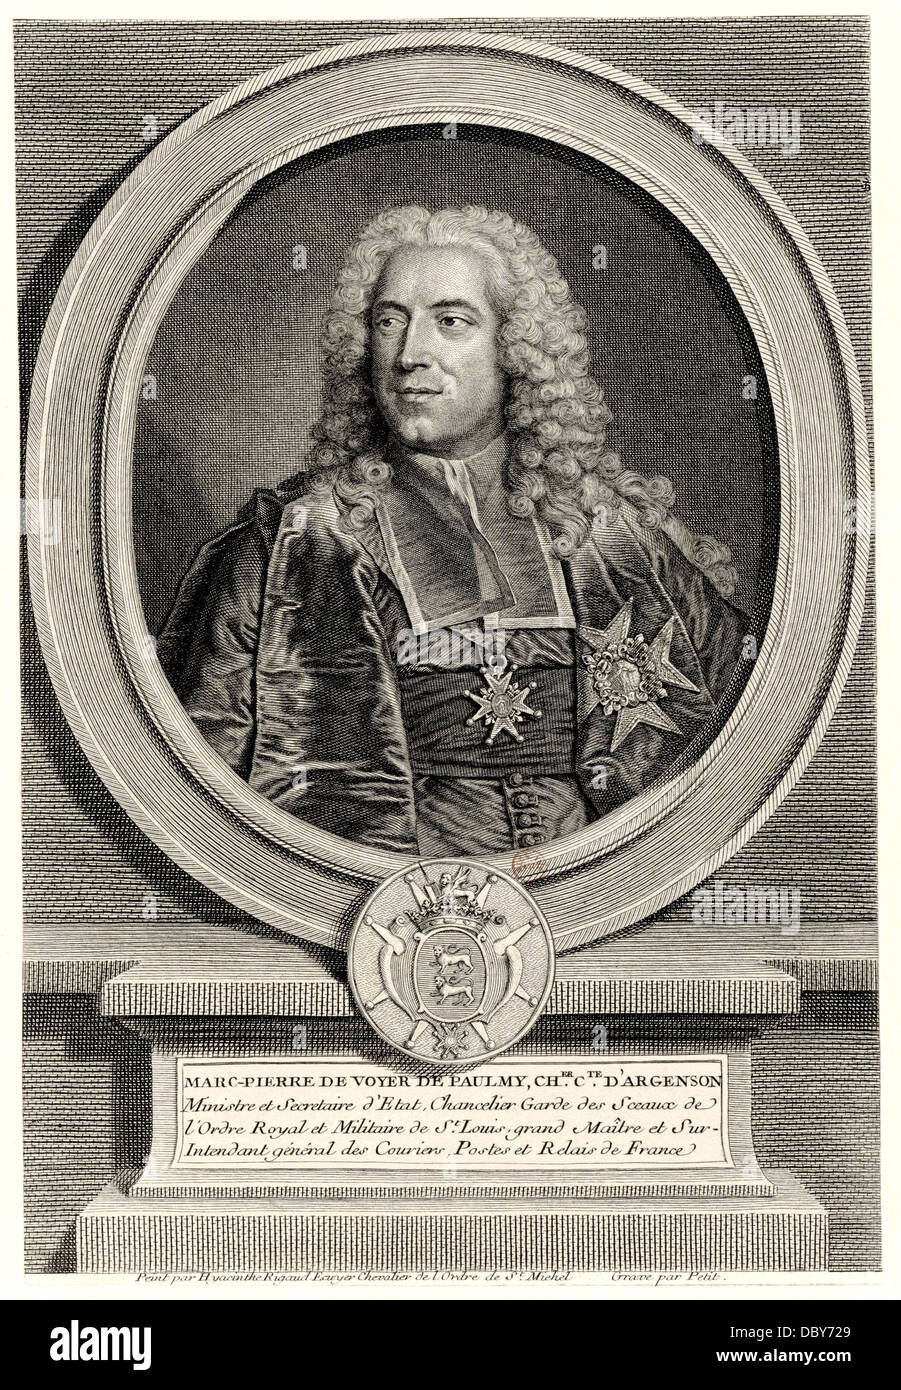 Marc-Pierre de Voyer de Paulmy d'Argenson (1696 - 1764), homme politique français. Banque D'Images